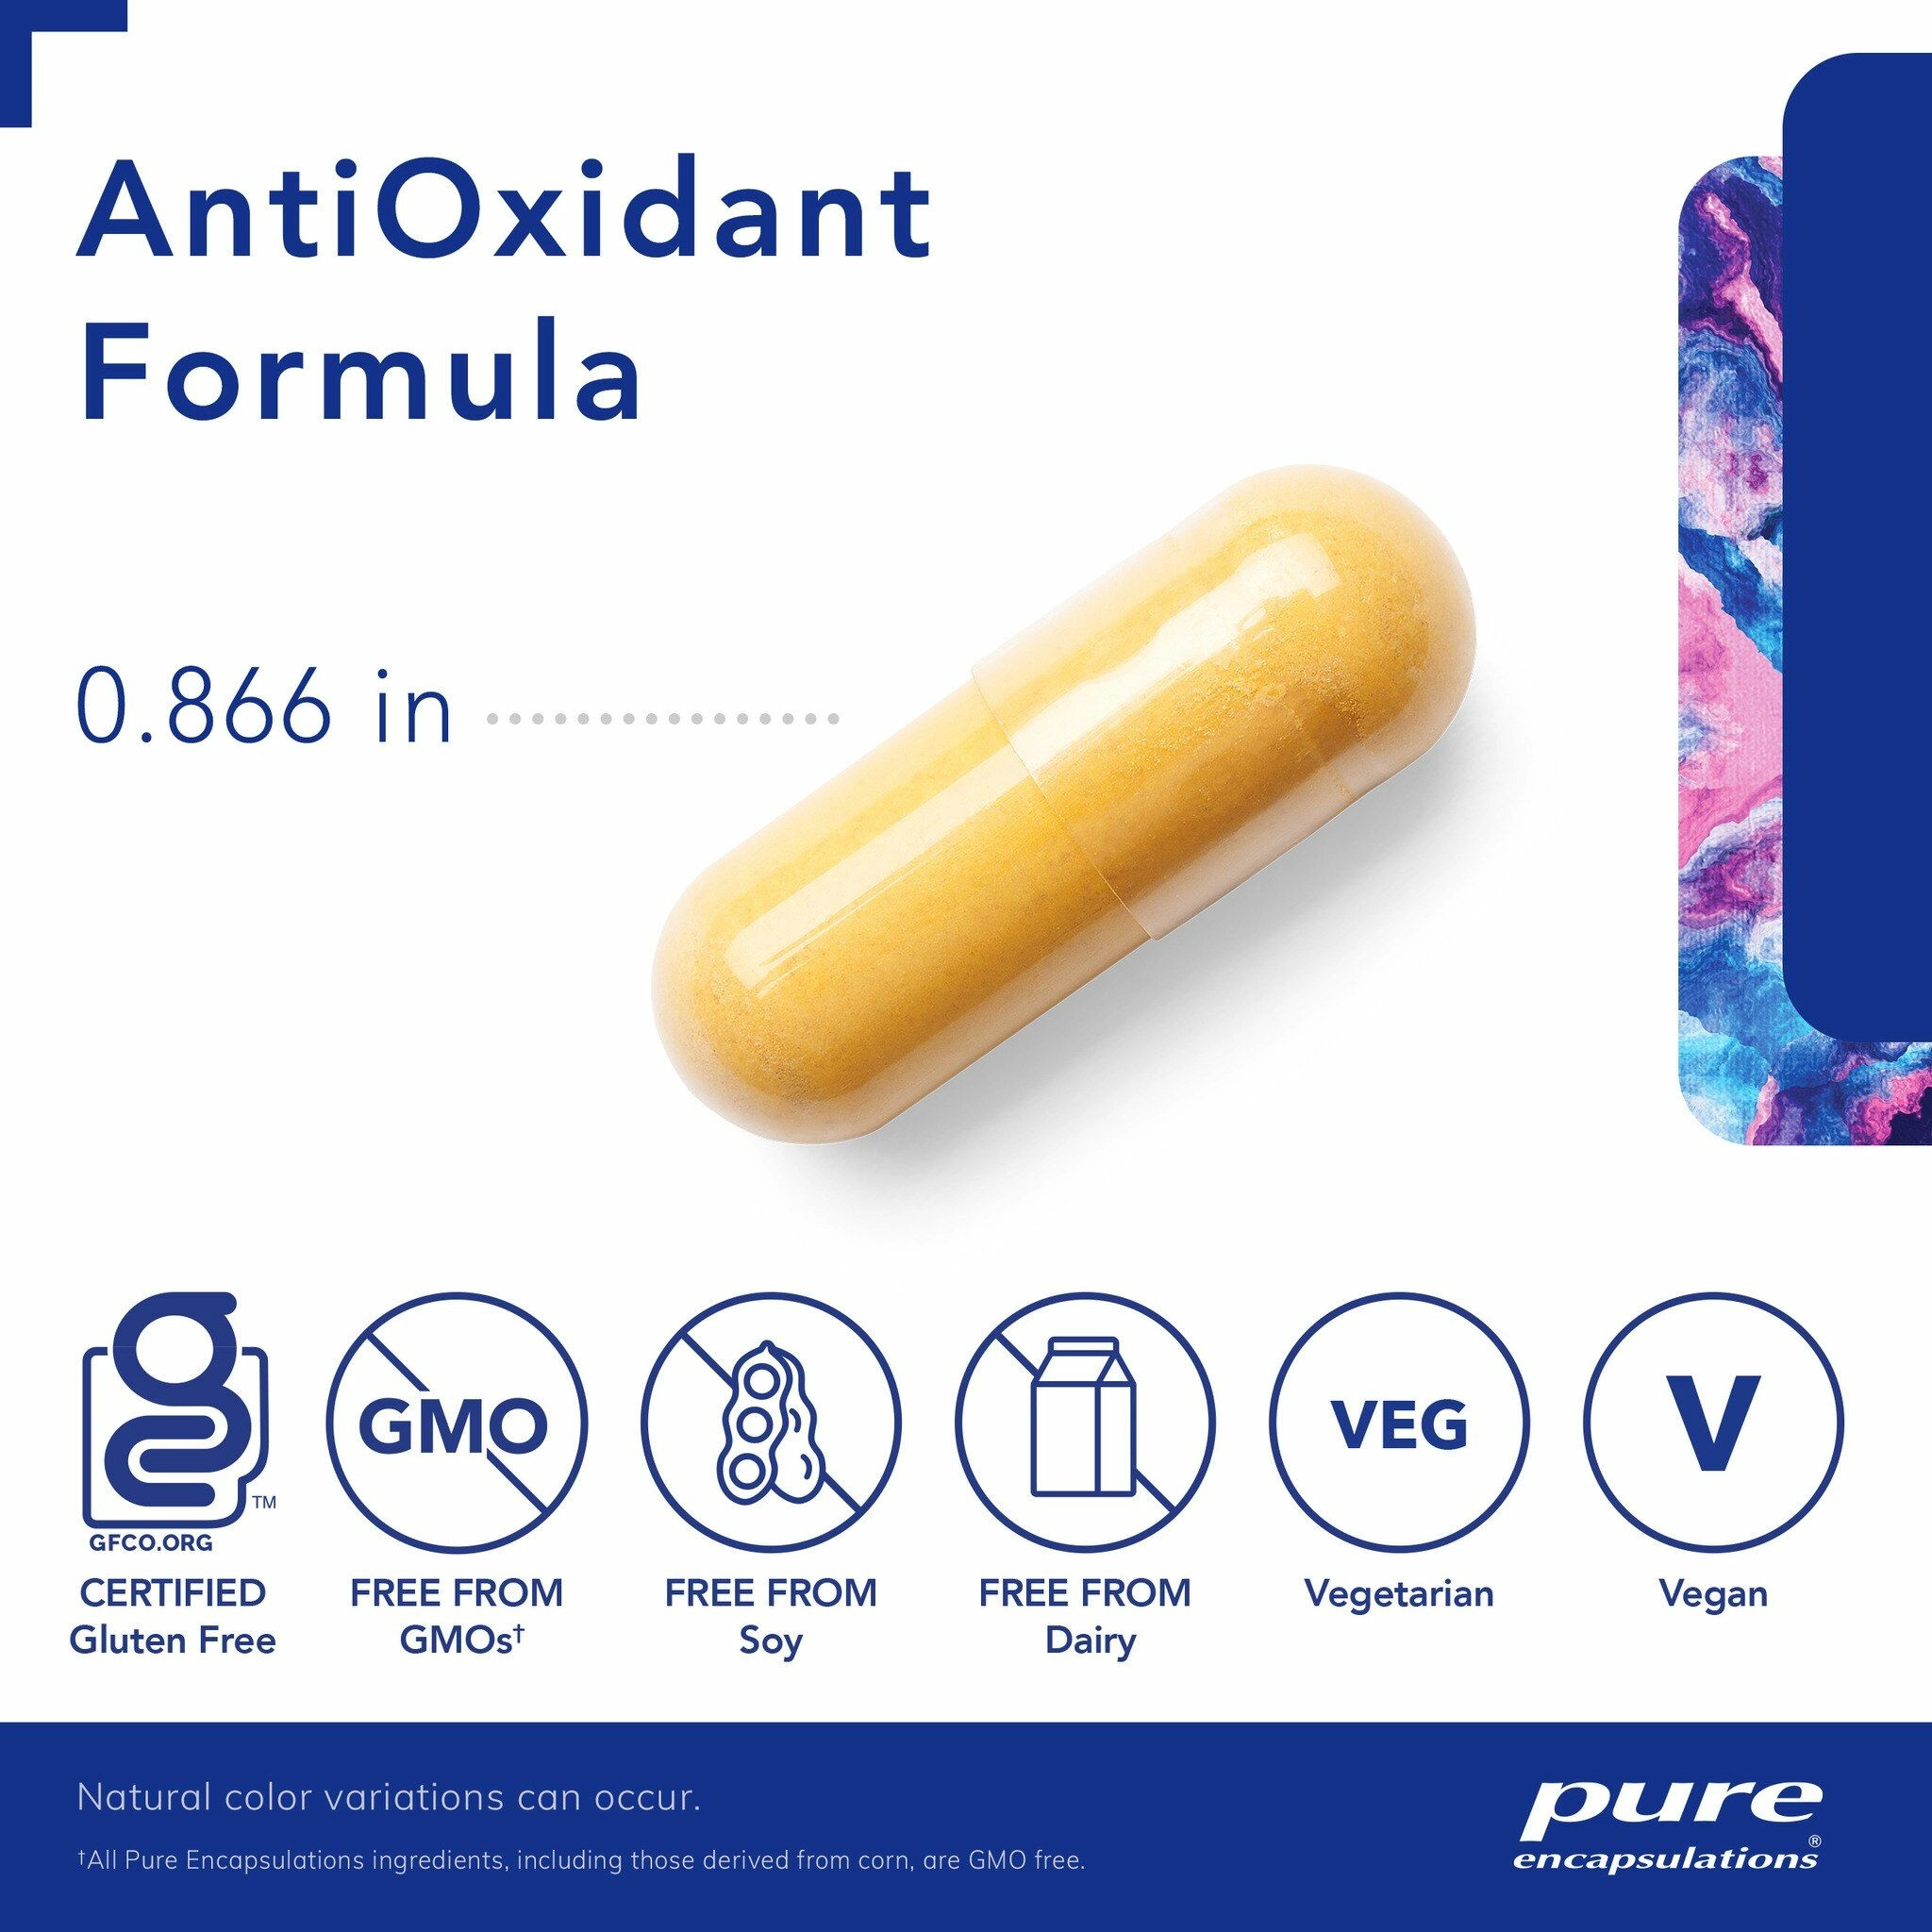 antioxidant formula image1